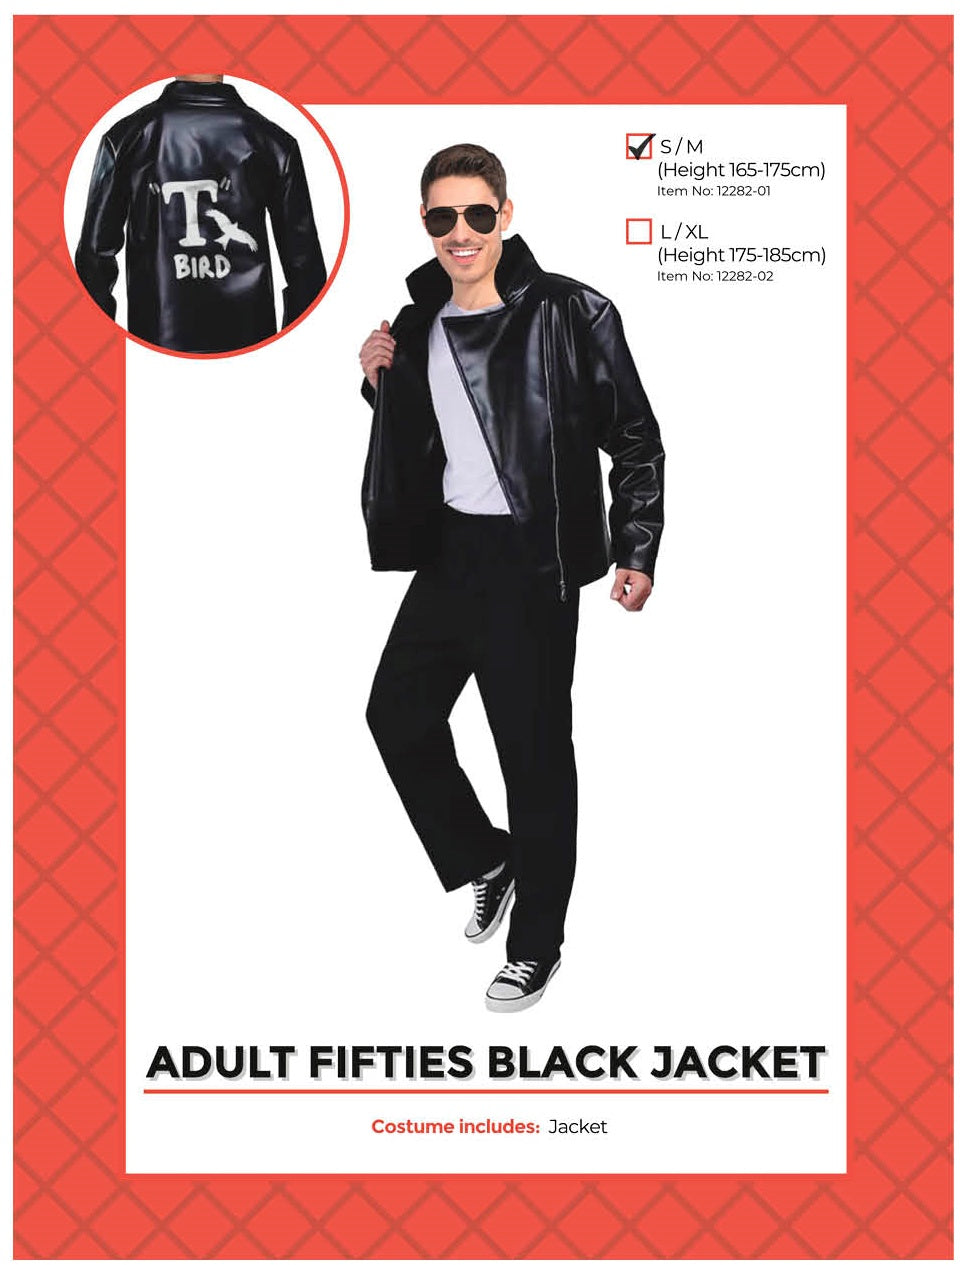 Adult Fifties Black Jacket Costume